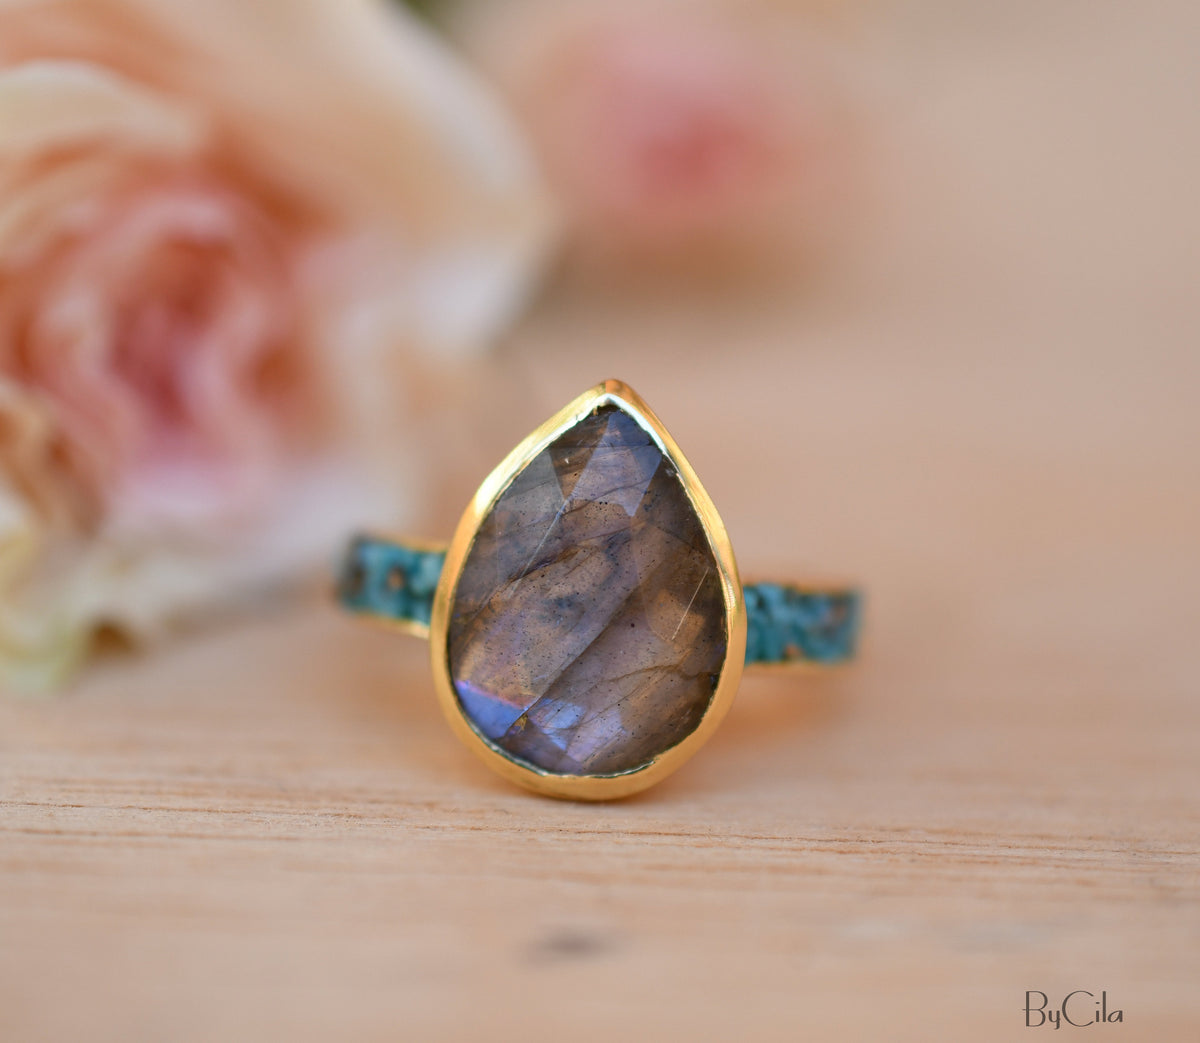 Labradorite & Turquoise Ring * 18k Gold Plated Ring * Statement Ring *Gemstone Ring *Labradorite *Bridal Ring *Organic Ring *Natural *BJR177